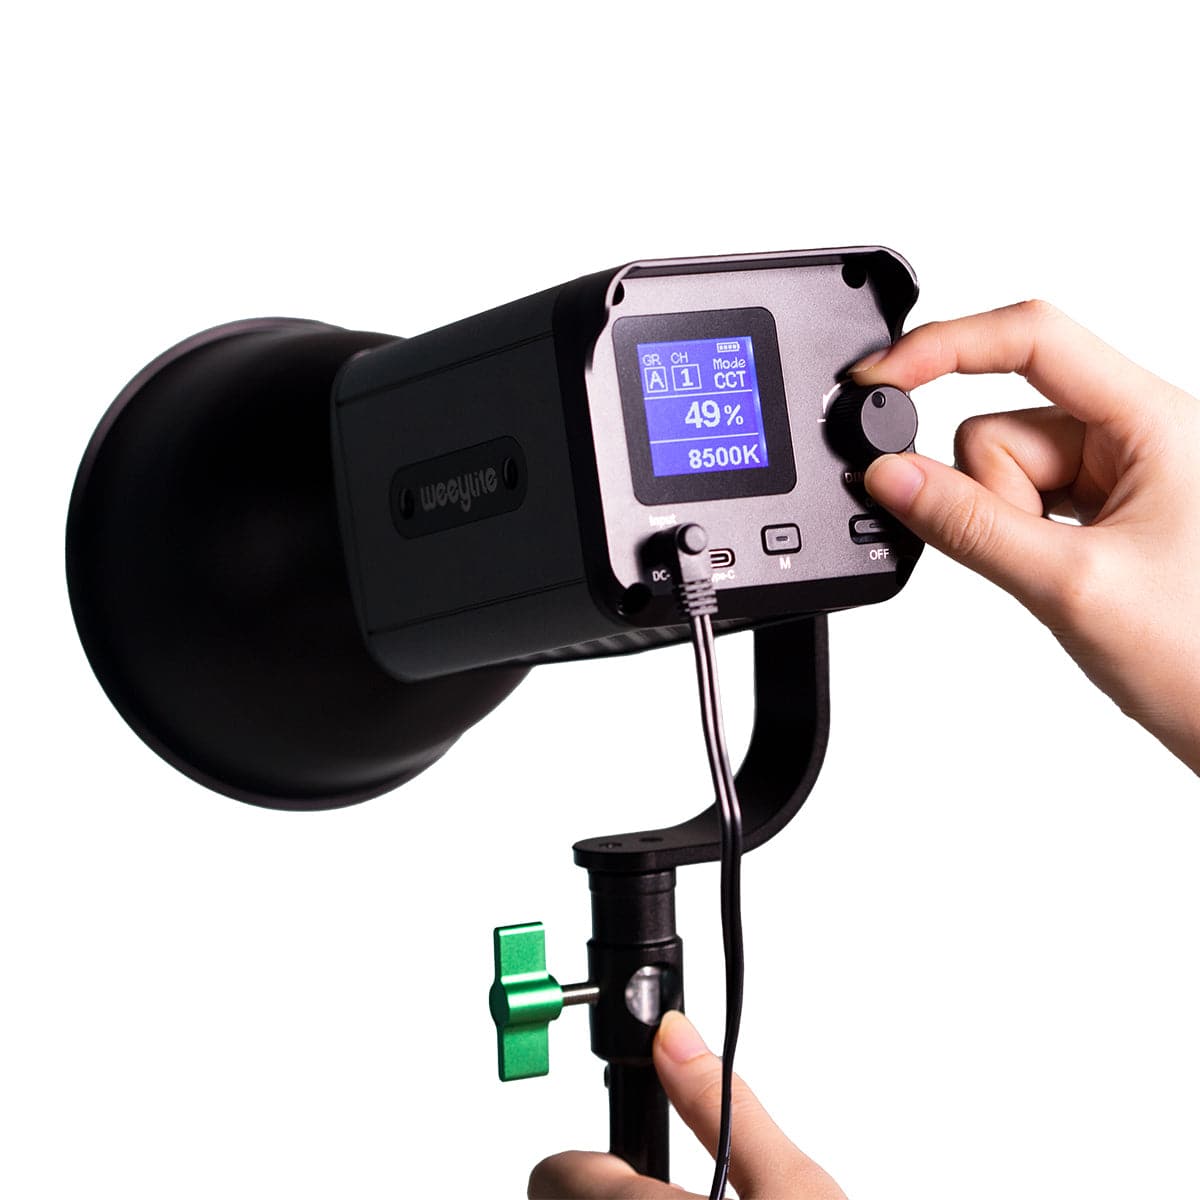 Weeylite ninja 200 Portable Bi-color COB LED Light Functional and Smart Control